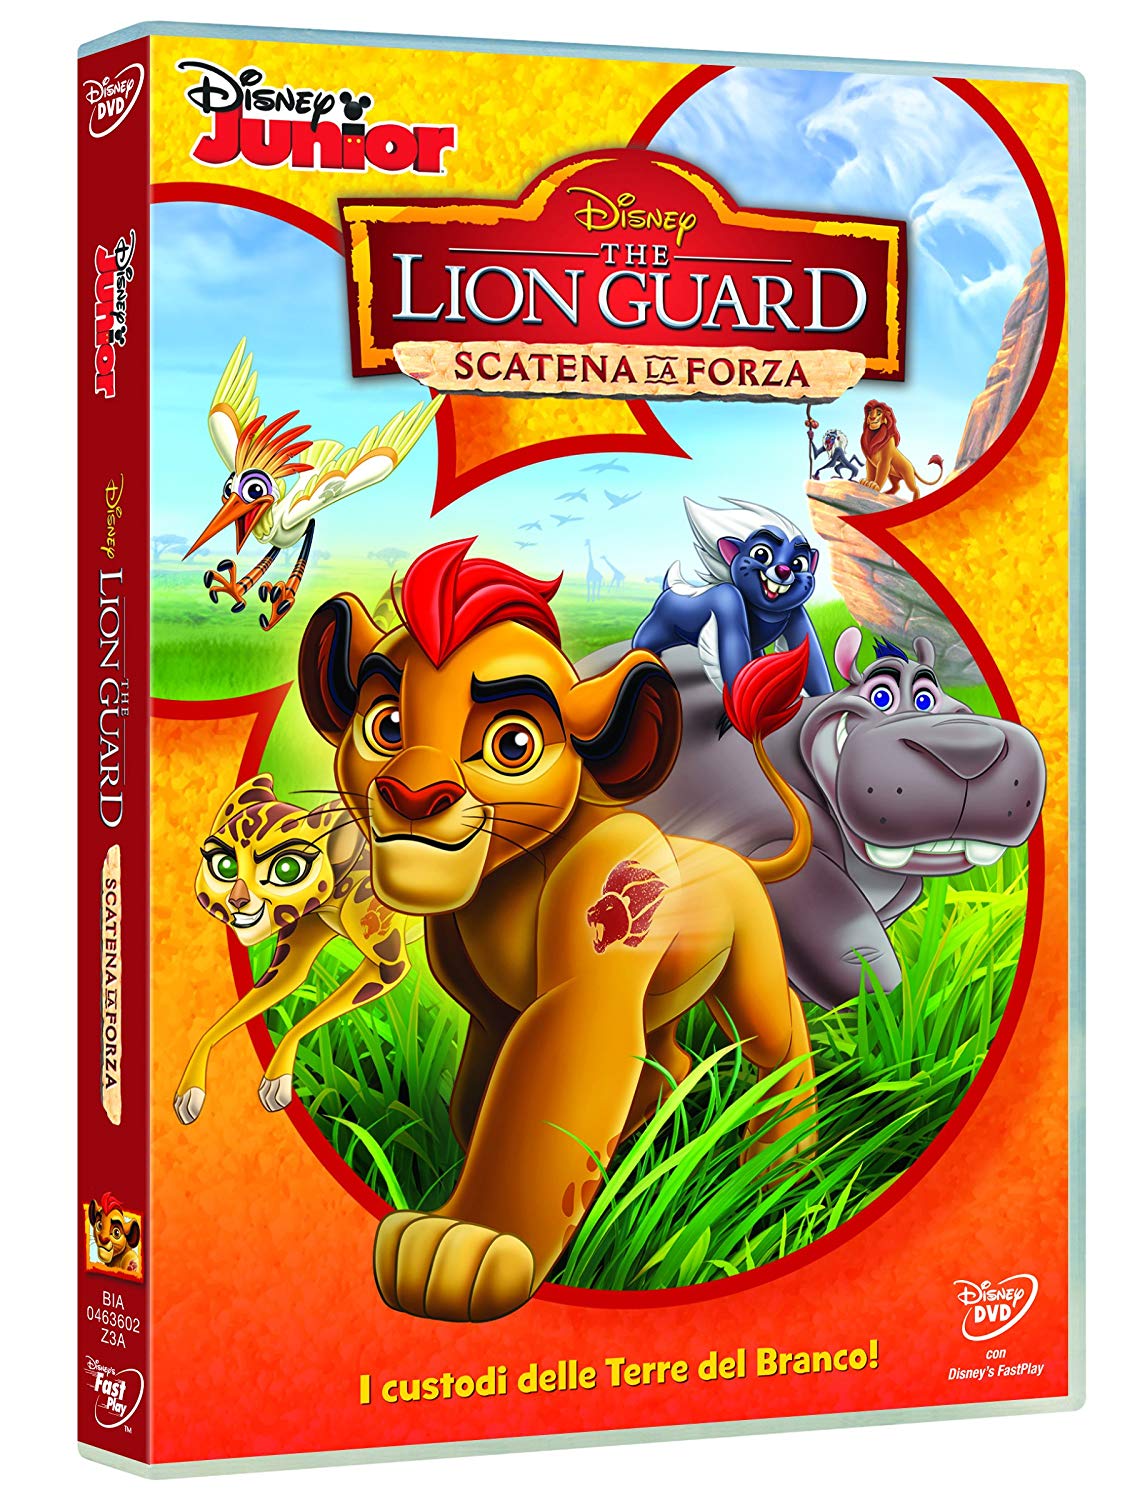 The Lion Guard DVD scatena la forza - cartoni animati home video